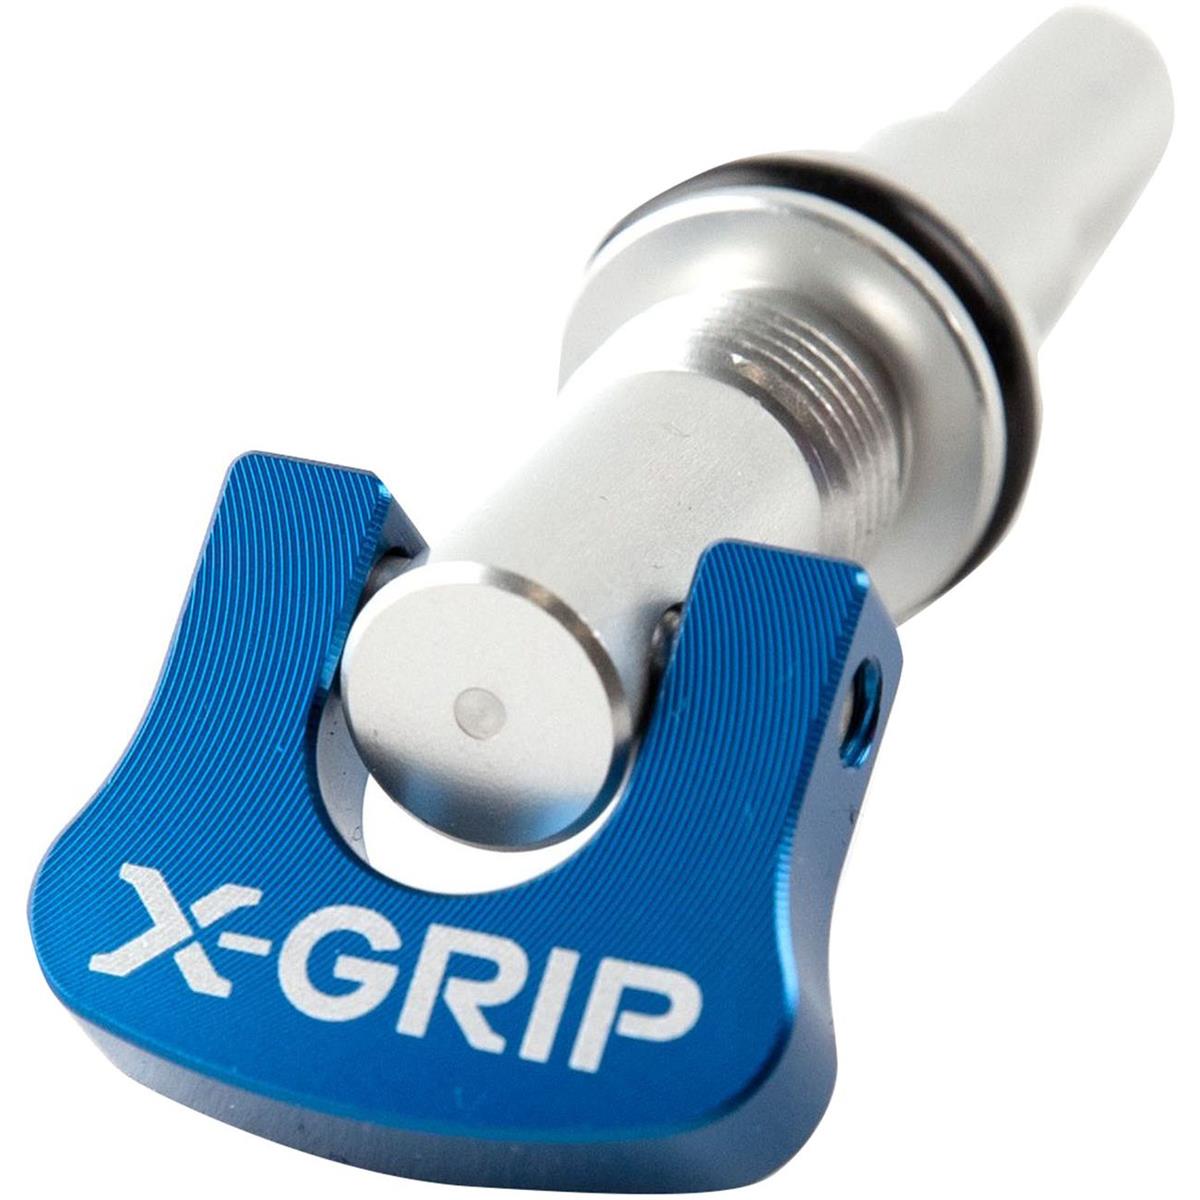 X-Grip Auslasssteuerungs-Regler  KTM SX/EXC, Husqvarna TE/TC, Gas Gas EC/MC, Blau